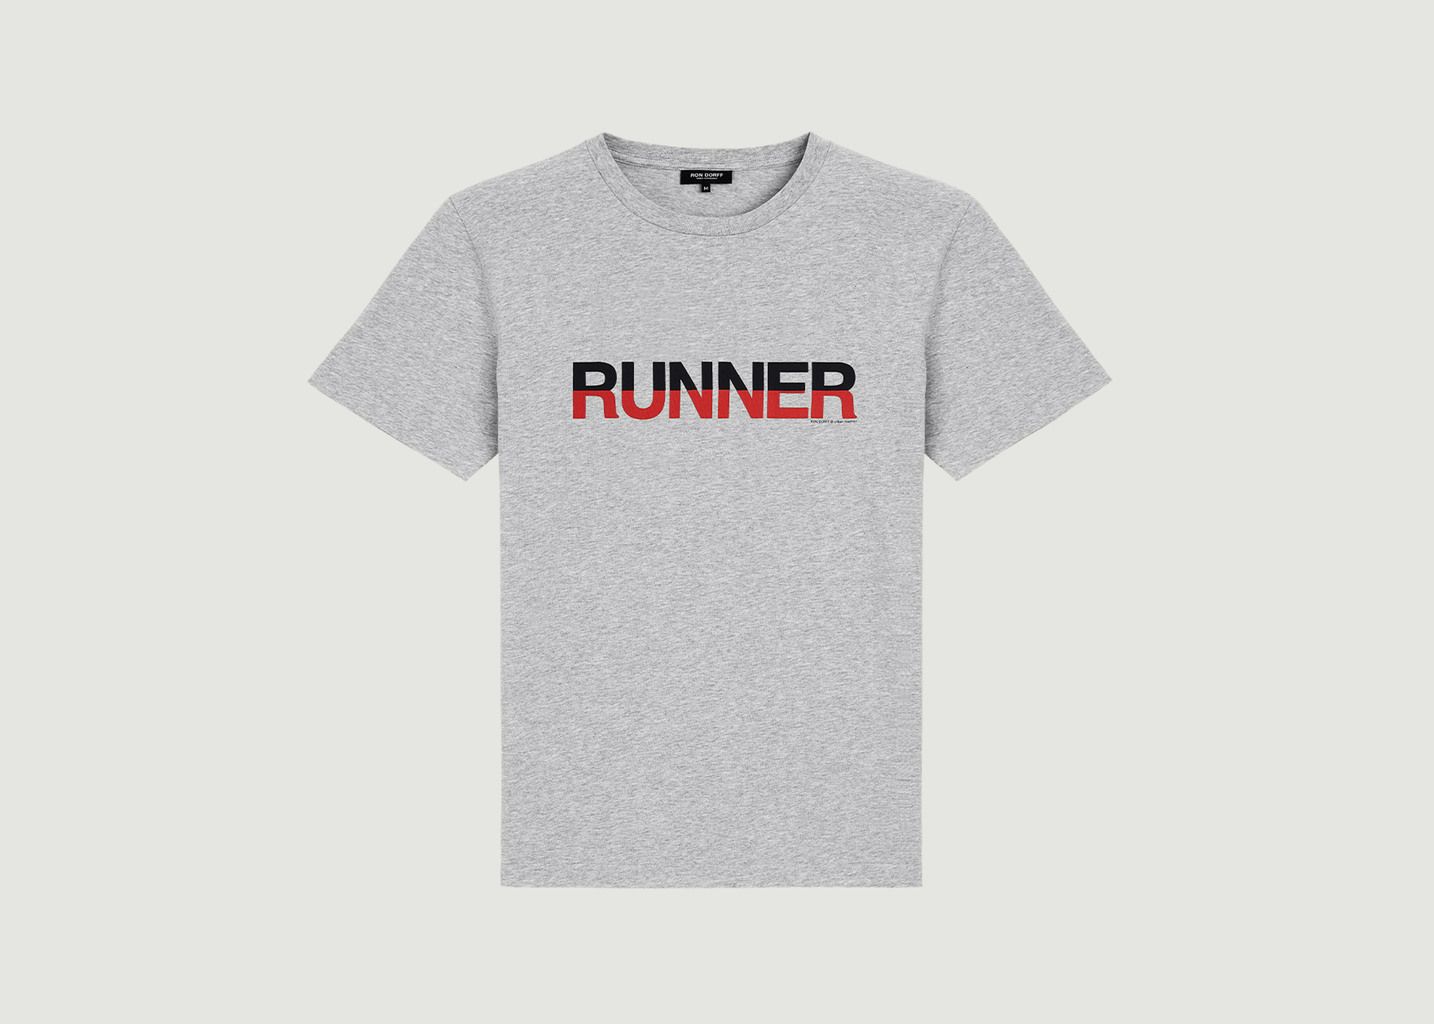 Runner T-Shirt - Ron Dorff